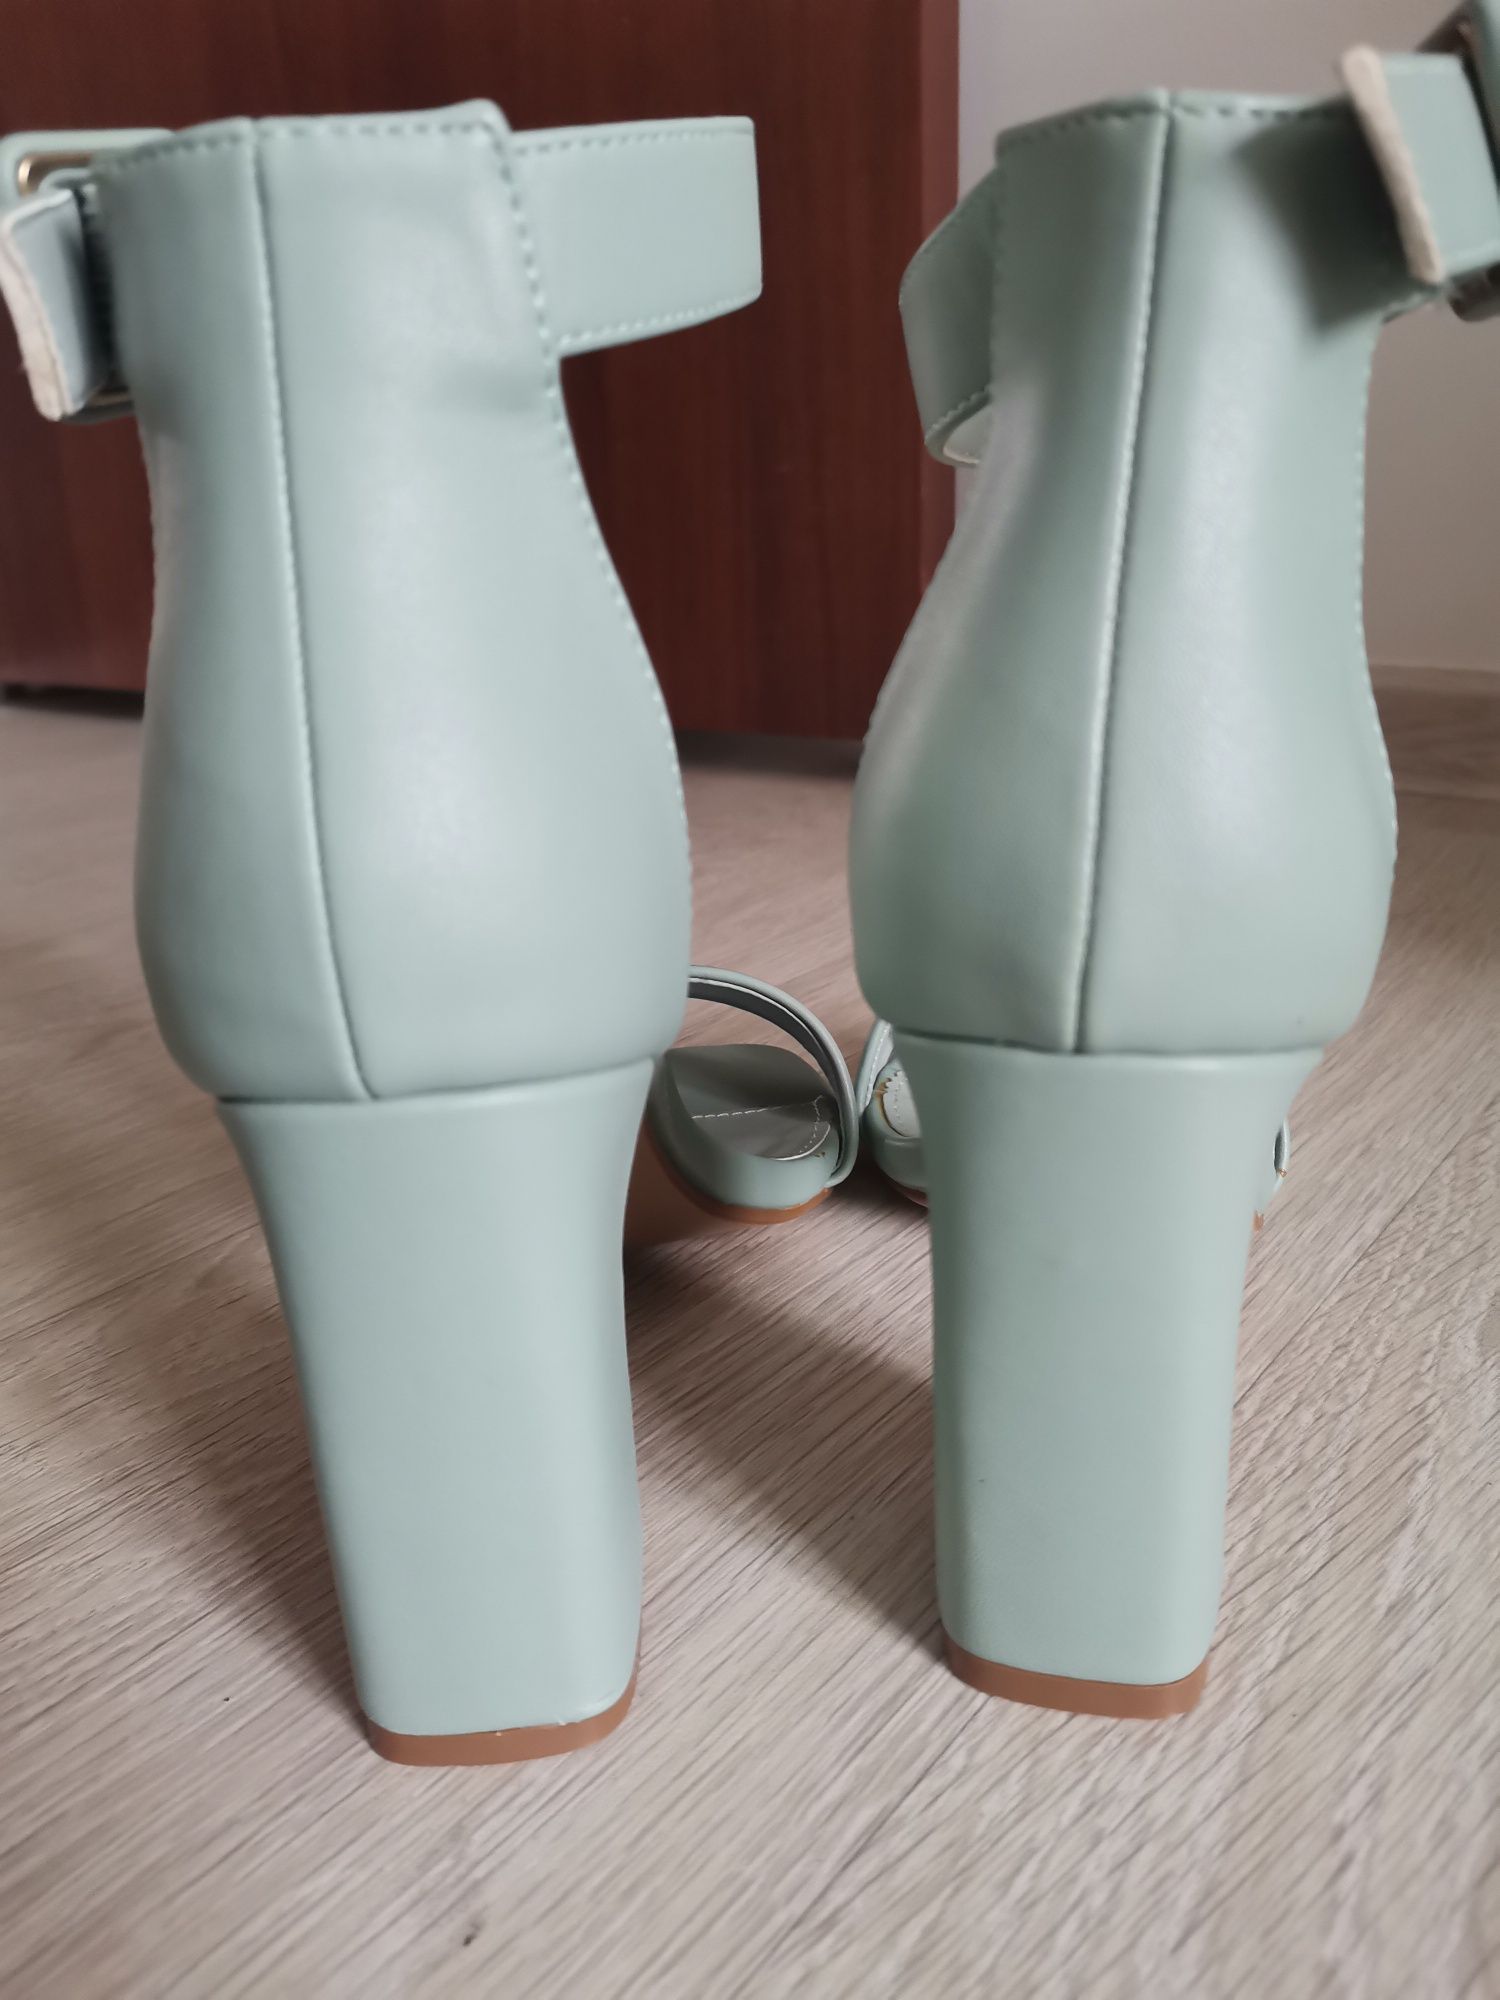 Дамски сандали в зелено